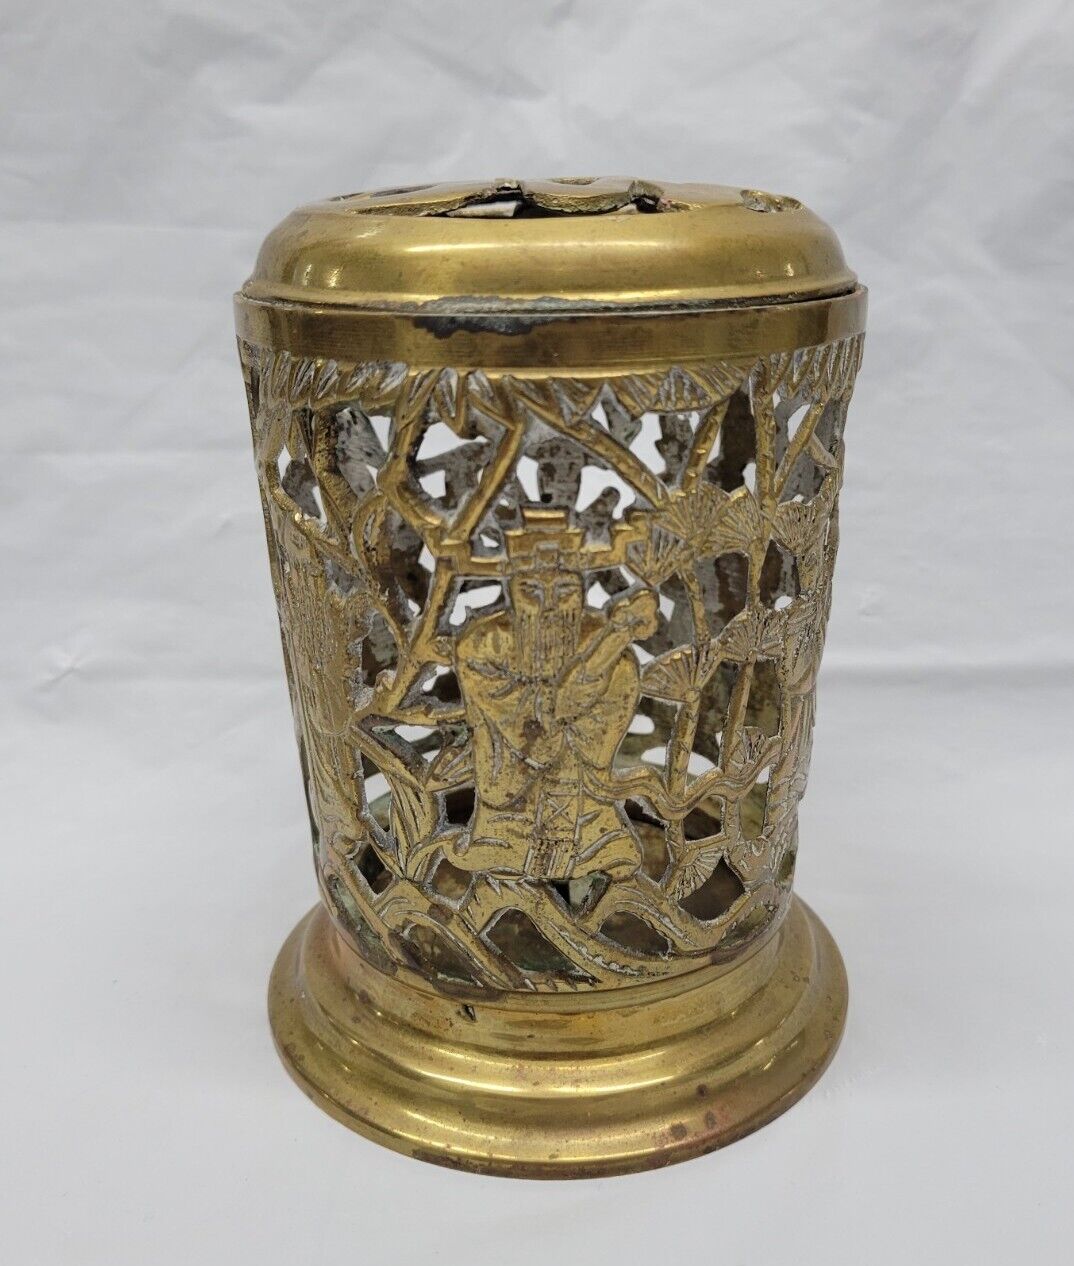 Vintage Asian Brass Large Incense Burner / Asian Candle Holder Filigree #5606